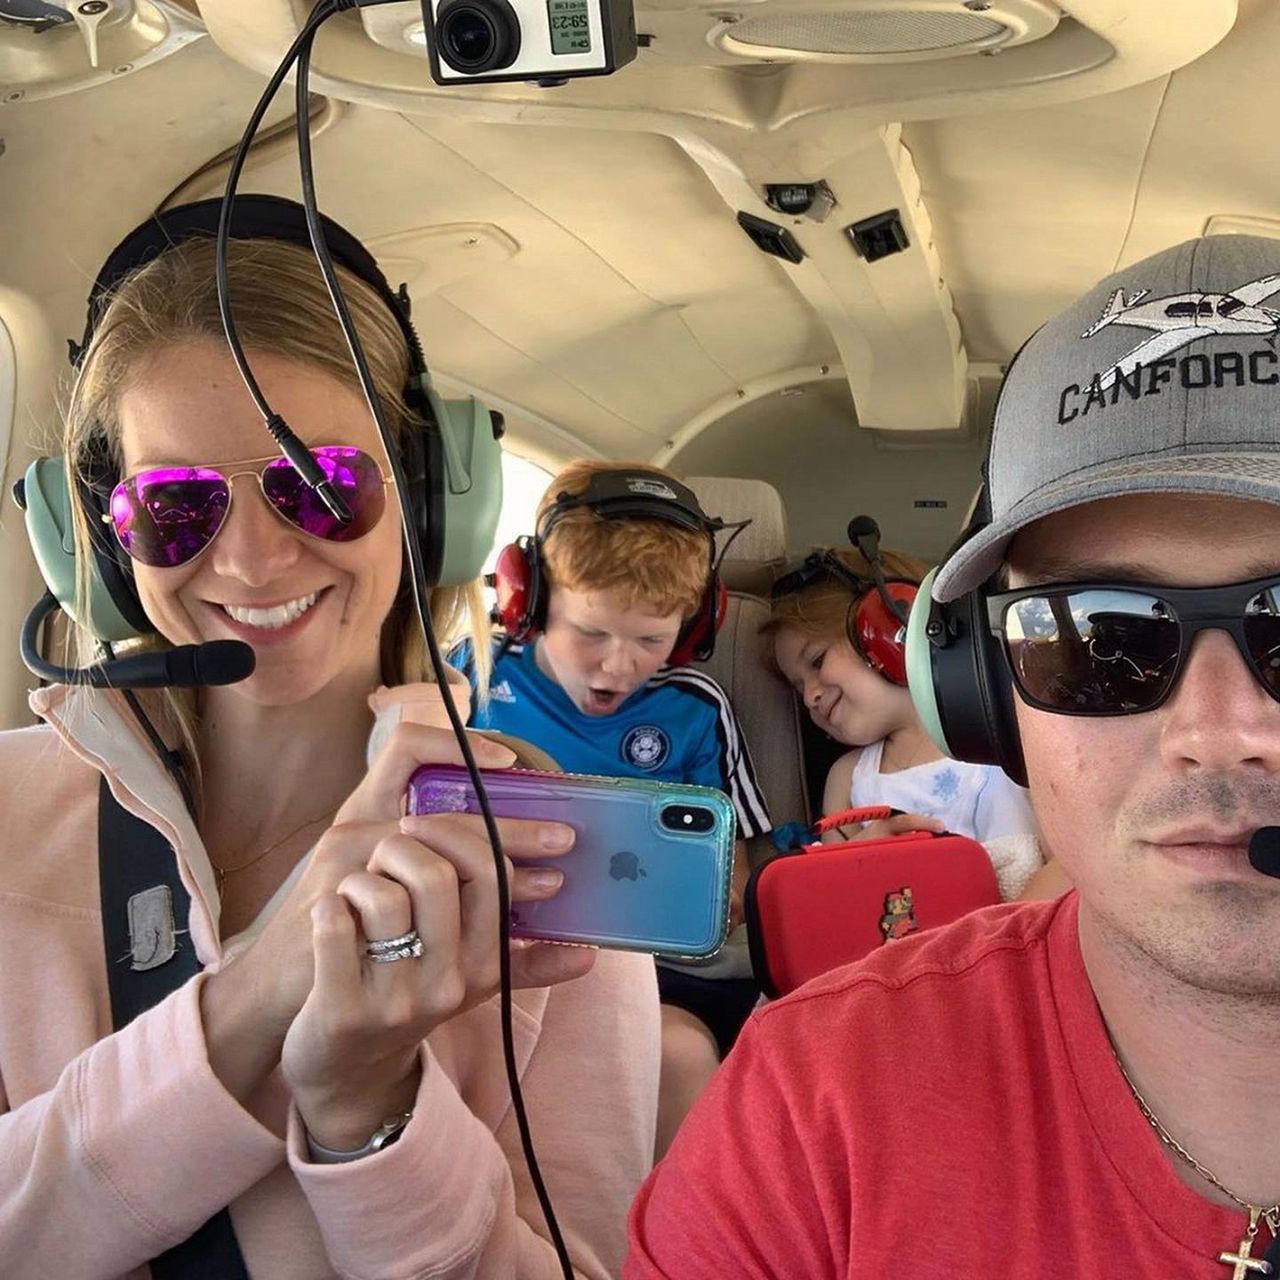 Samolot szczęśliwie wylądował. Pilot uratował żonę i dwójkę dzieci. Bohater nagrał wideo